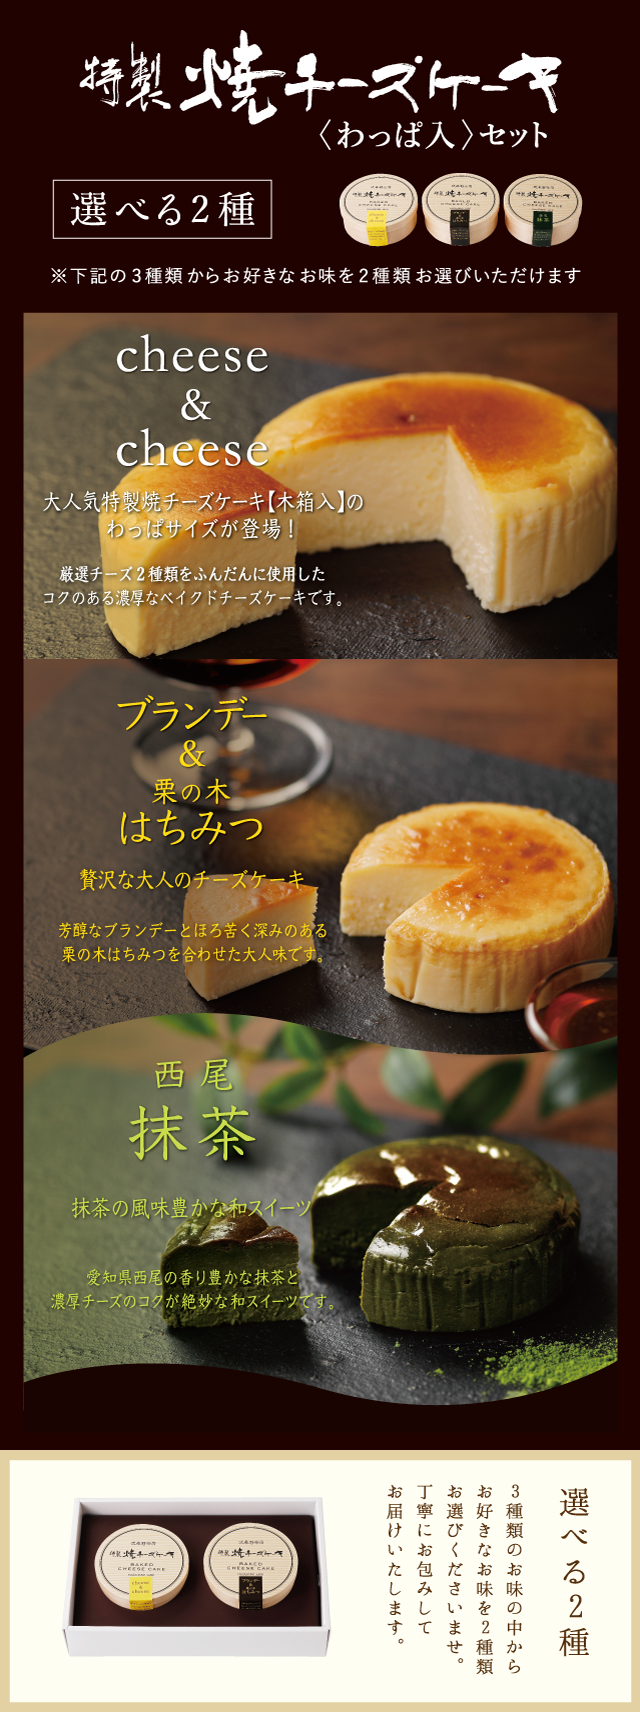 特製焼チーズケーキの新しい味が発売開始です！ | 株式会社武蔵野テーブル